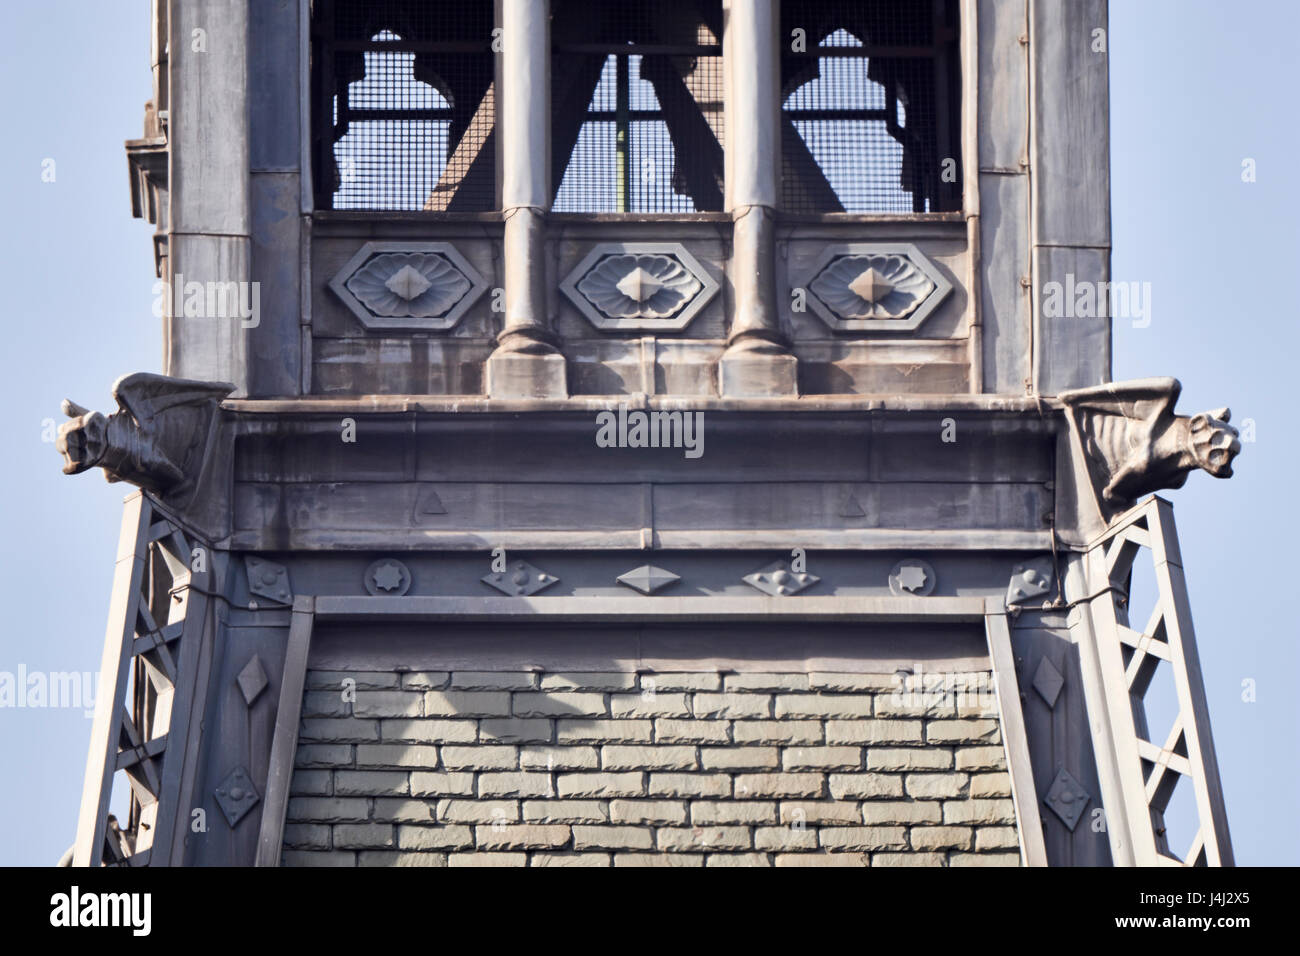 Uhrturm Detail des Midland Grand Hotel in St. Pancras Station, London. Wasserspeier mit Gitterträgern. Designed by George Gilbert Scott der 1860er Jahre Stockfoto